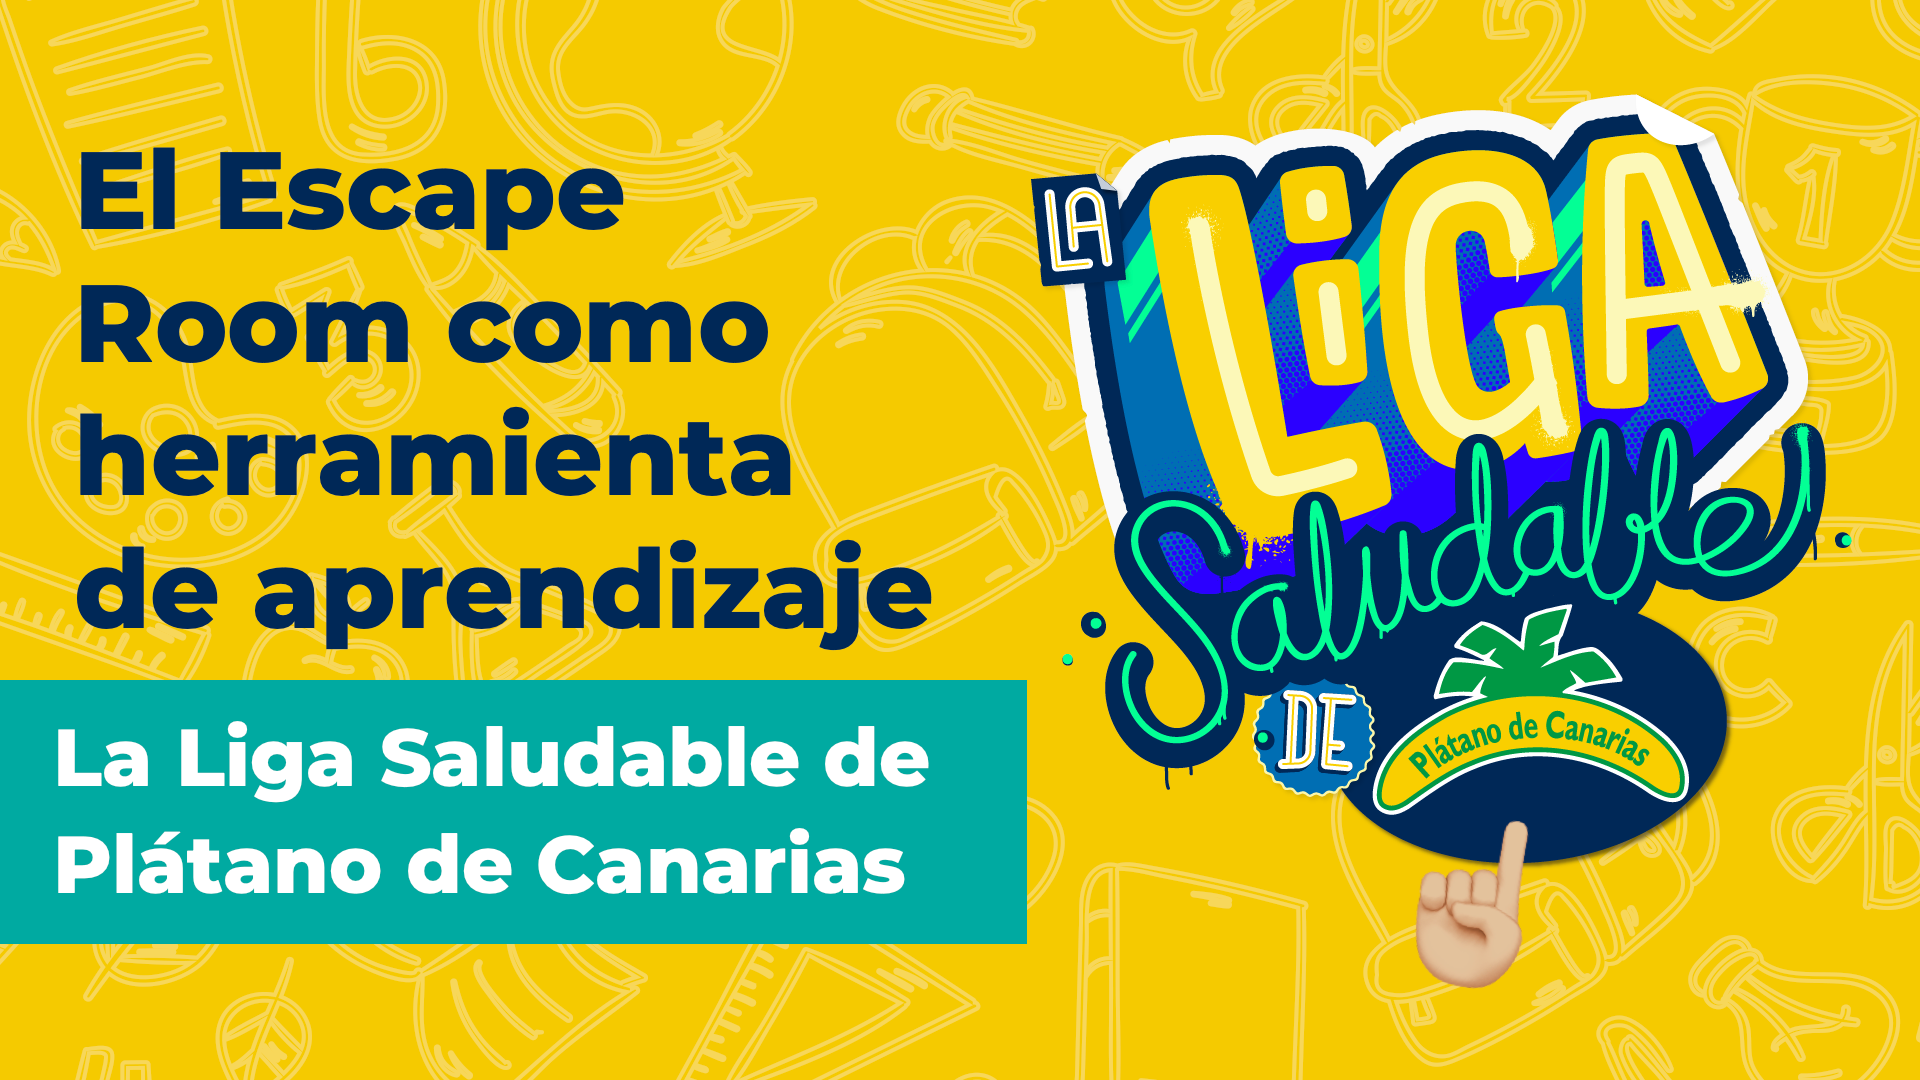 El Escape room como herramienta de aprendizaje. La Liga saludable Plátano de Canarias.